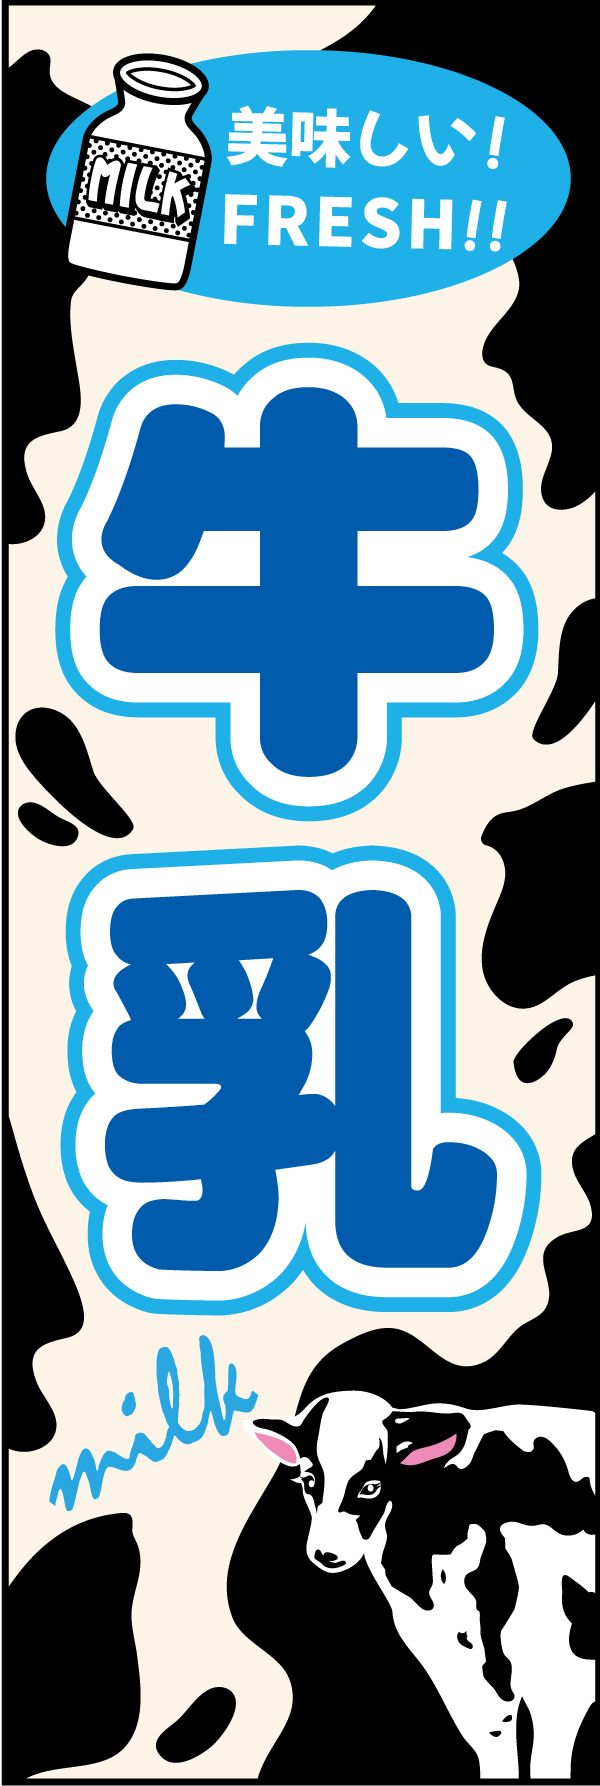 牛乳 4牛をイメージしたモウモウ柄にイラスト使用でシンプルに目立つ「牛乳」のぼりです。文字も大きくてわかりやすいです。（M.H) 